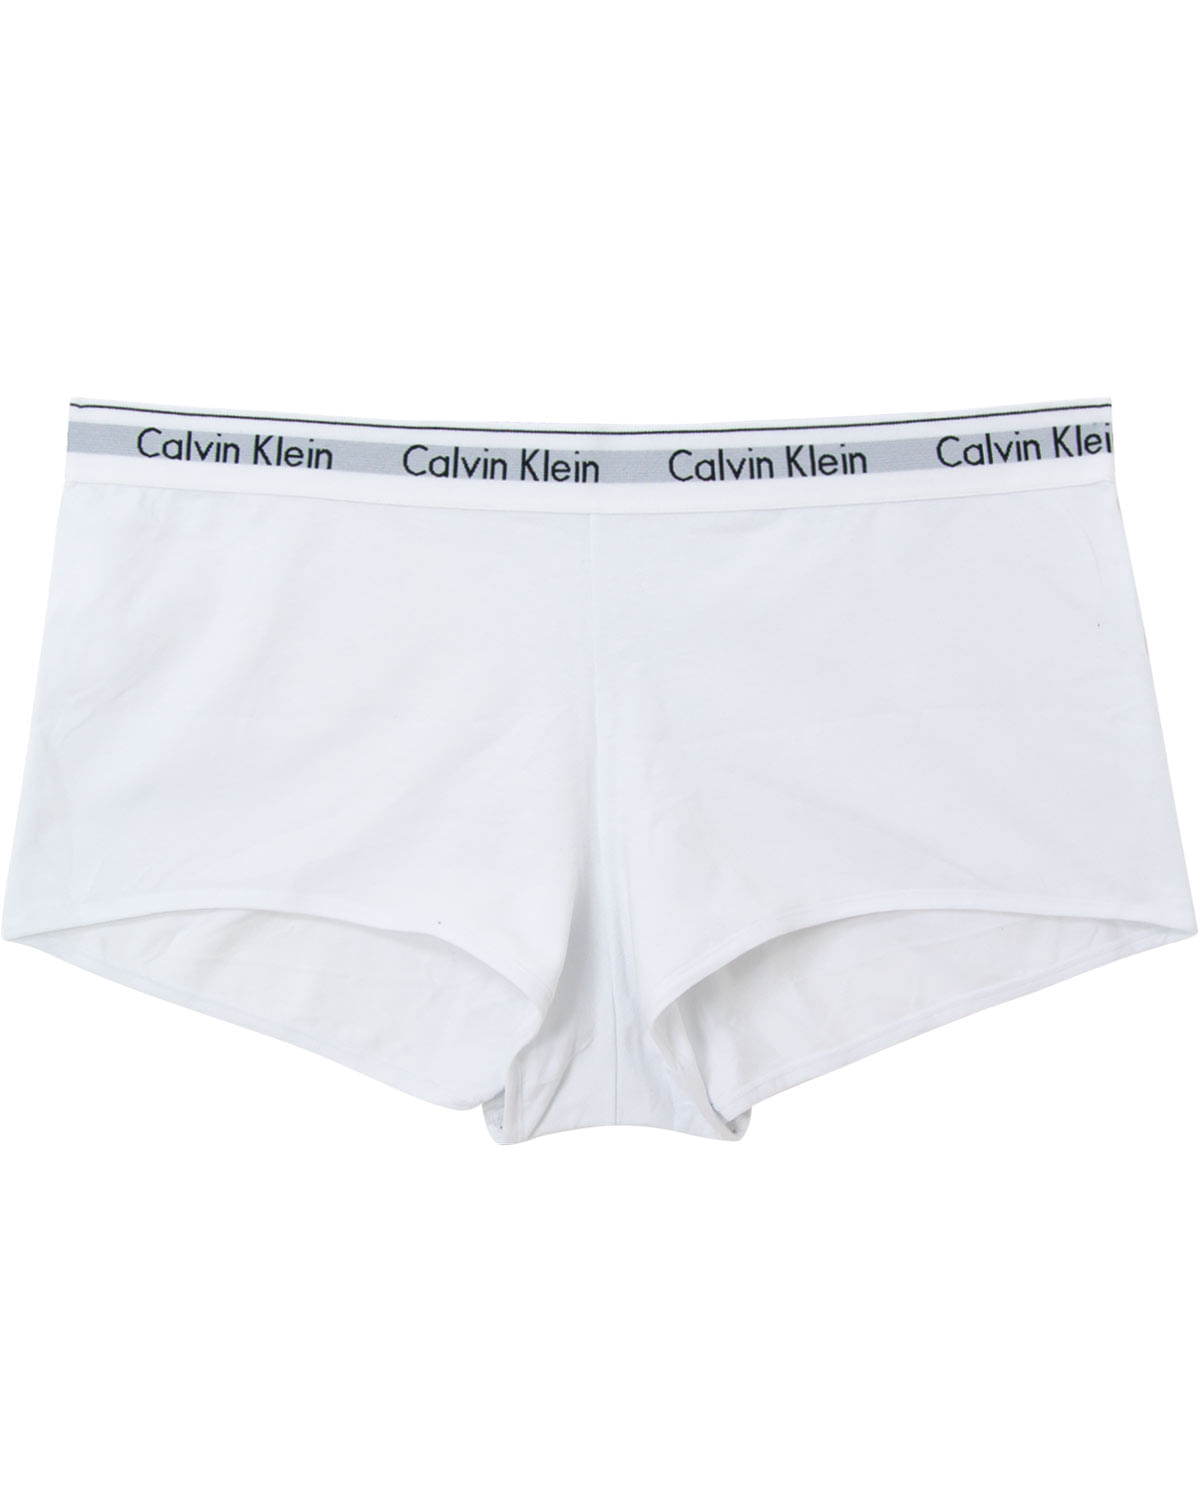 Calcinha Calvin Klein Plus Size Boyshort Modern Cotton